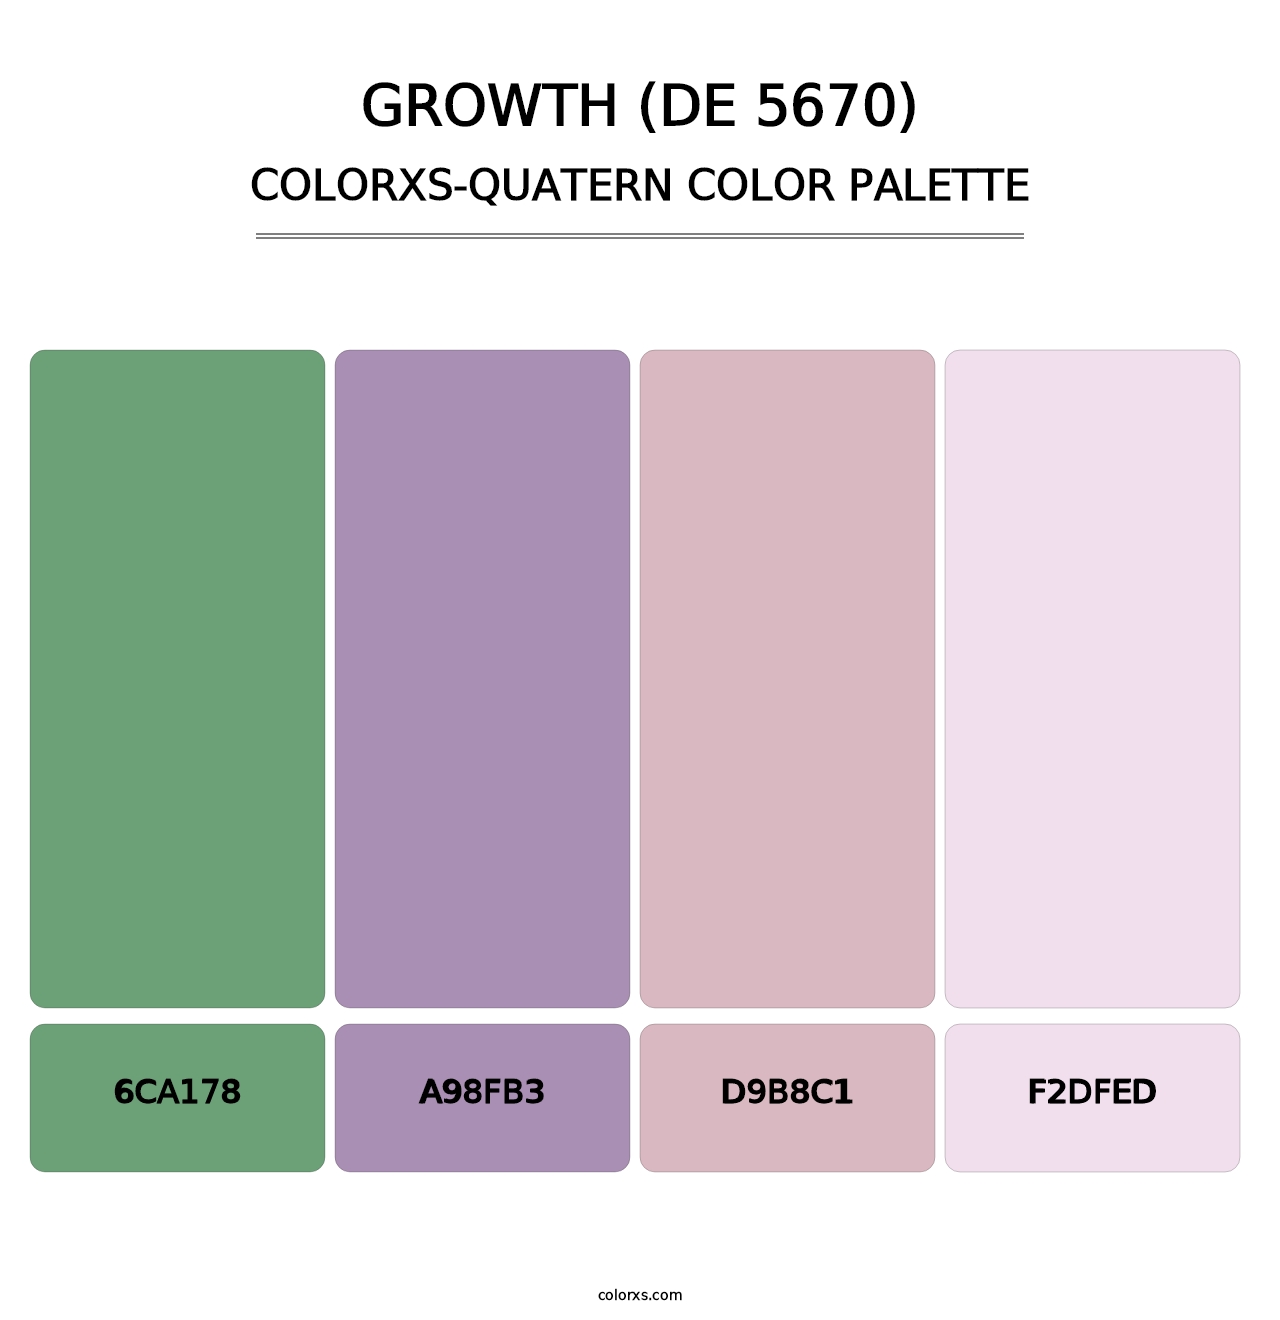 Growth (DE 5670) - Colorxs Quatern Palette